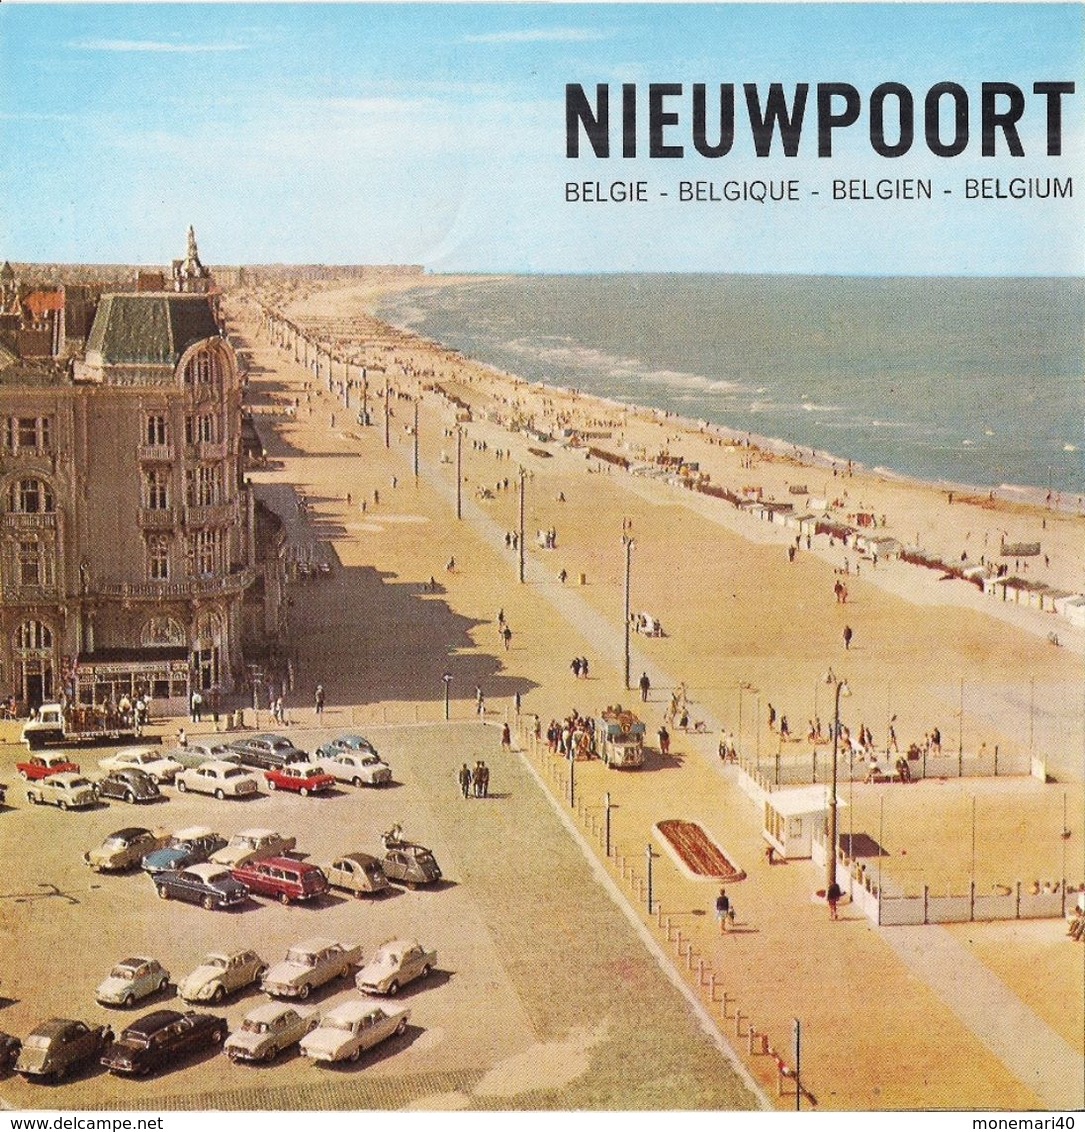 NIEUPOORT (Nieuport) - Tourism Brochures